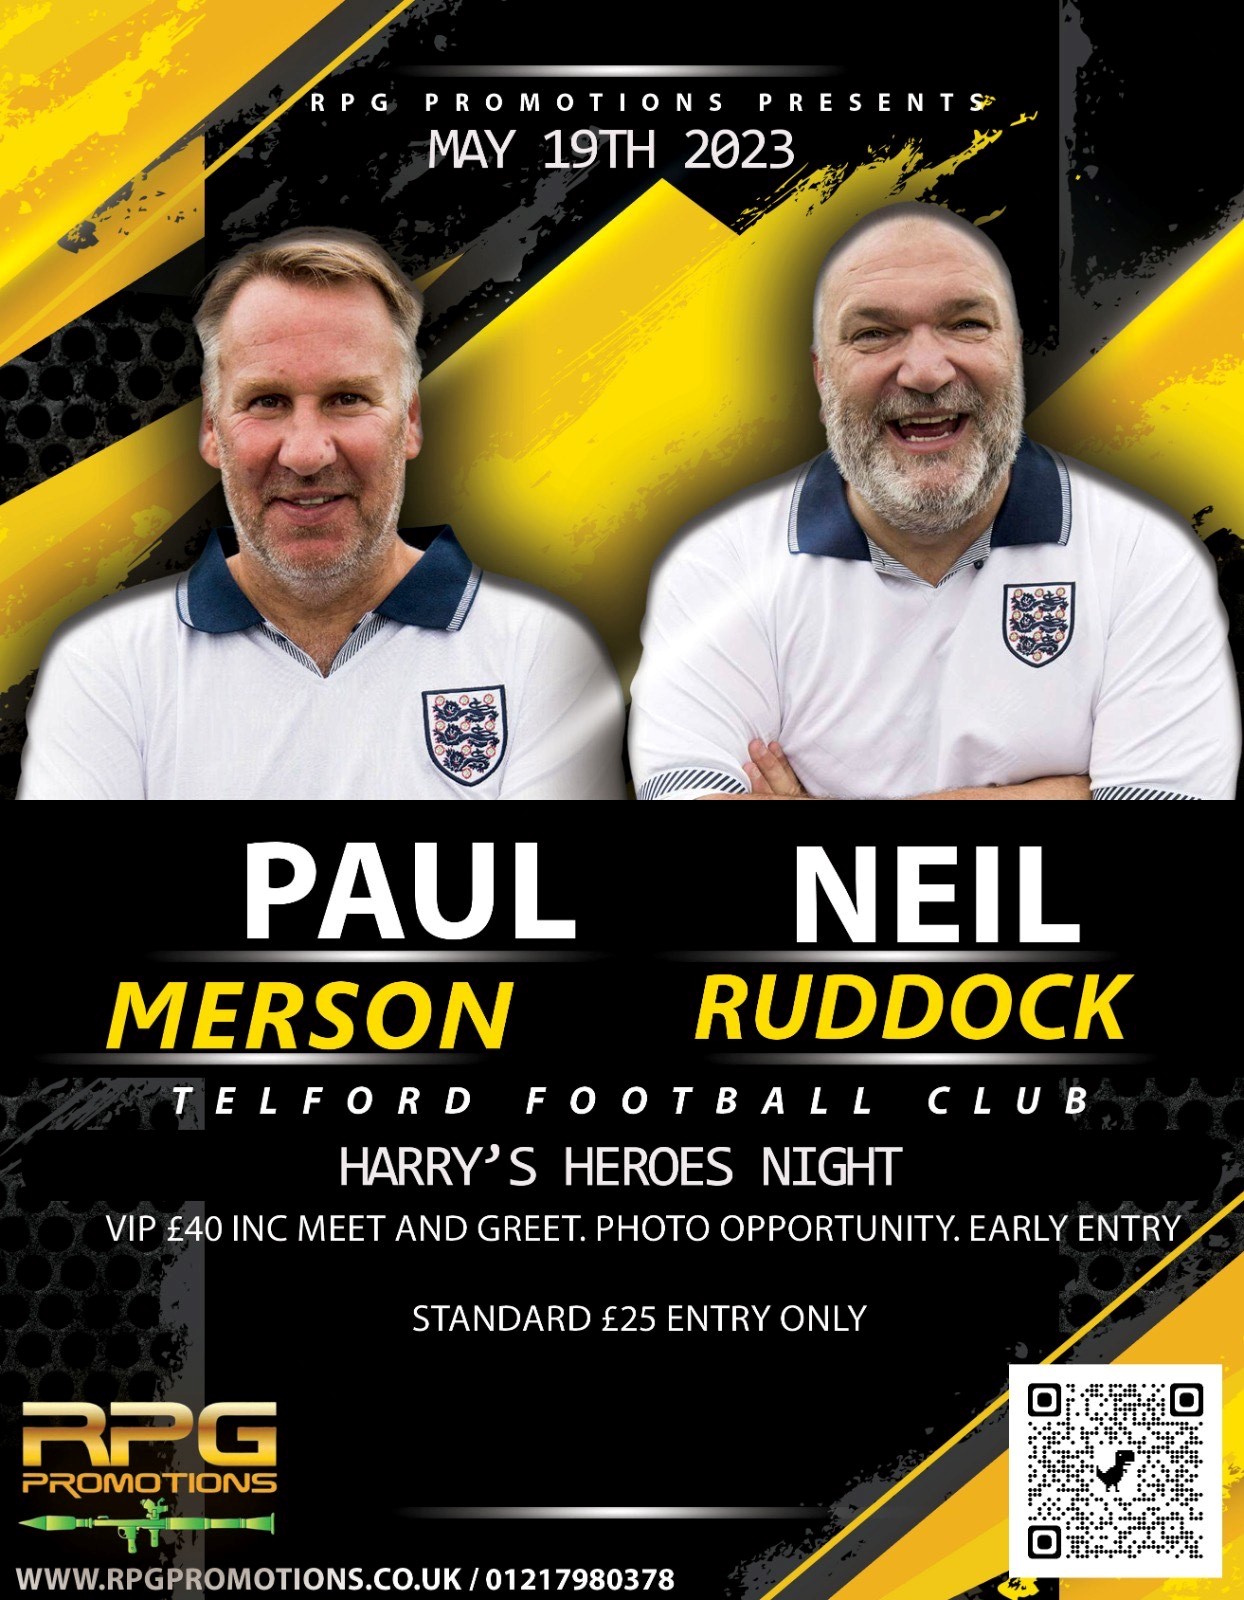 An evening with Paul Merson & Neil Ruddock